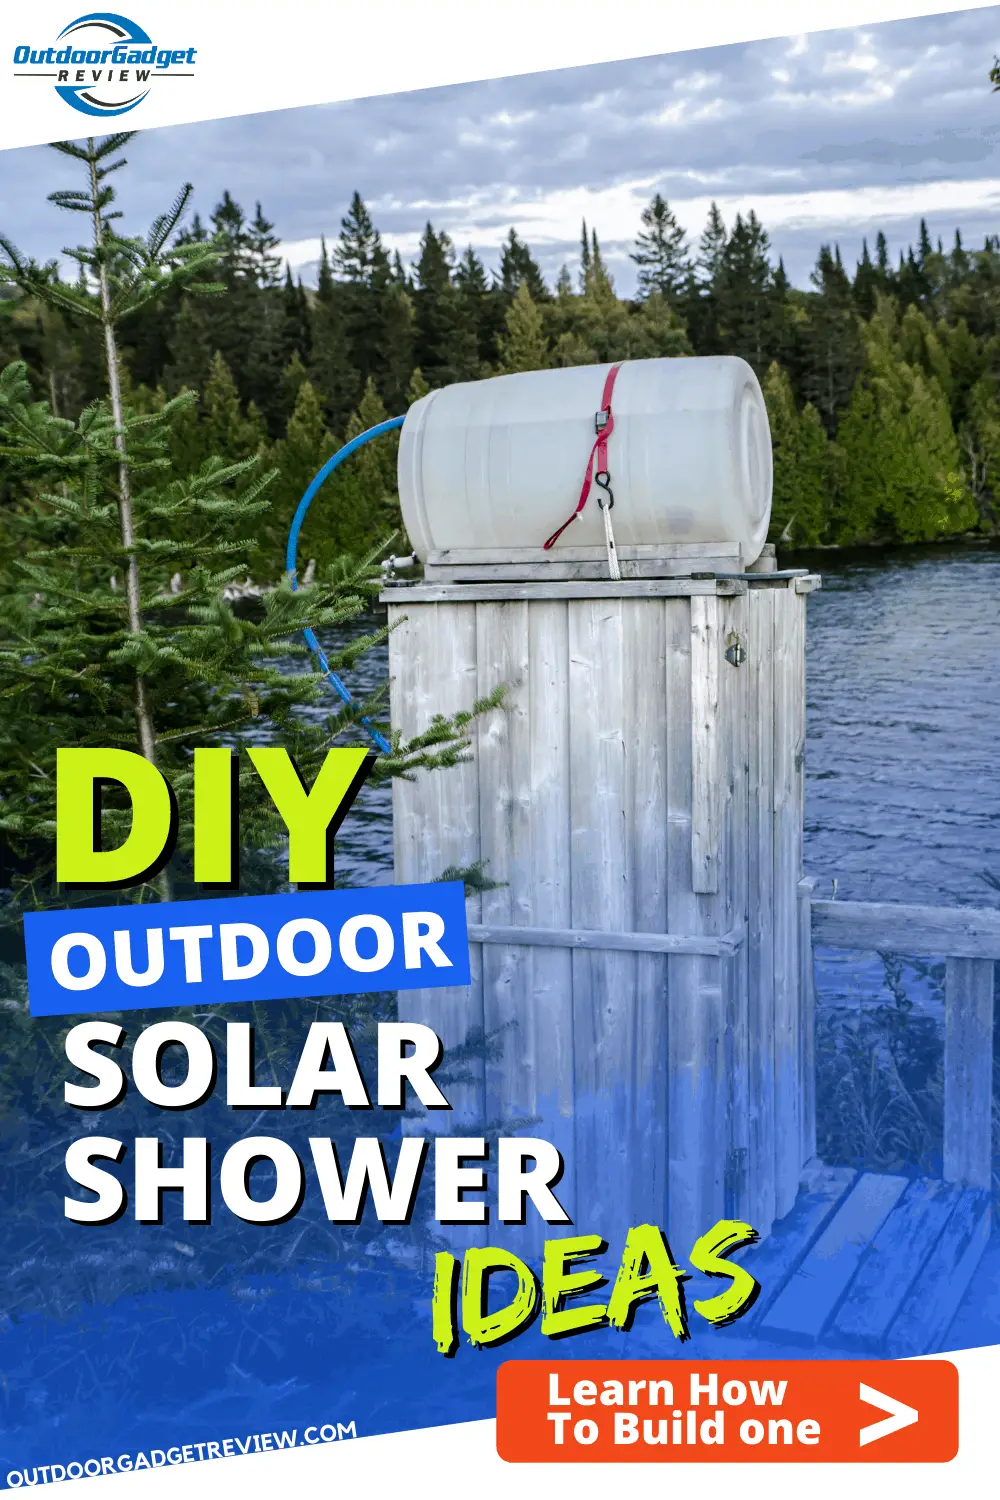 DIY Outdoor Solar Shower Ideas